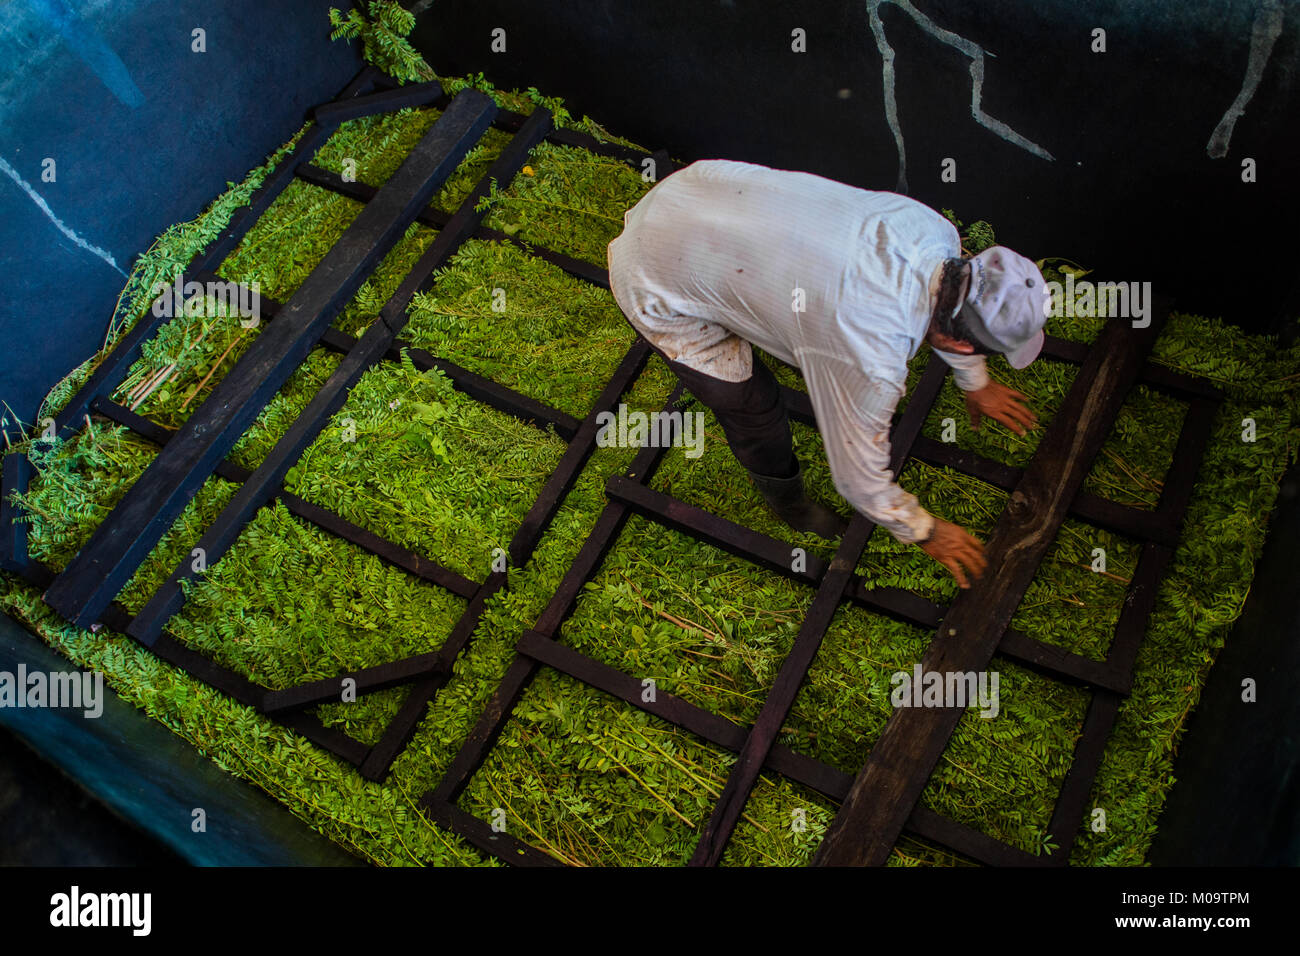 Lavoratore agricolo carichi di foglie e rami delle piante di indaco in un serbatoio a macerare a fabbricazione vicino a San Miguel, El Salvador. Foto Stock